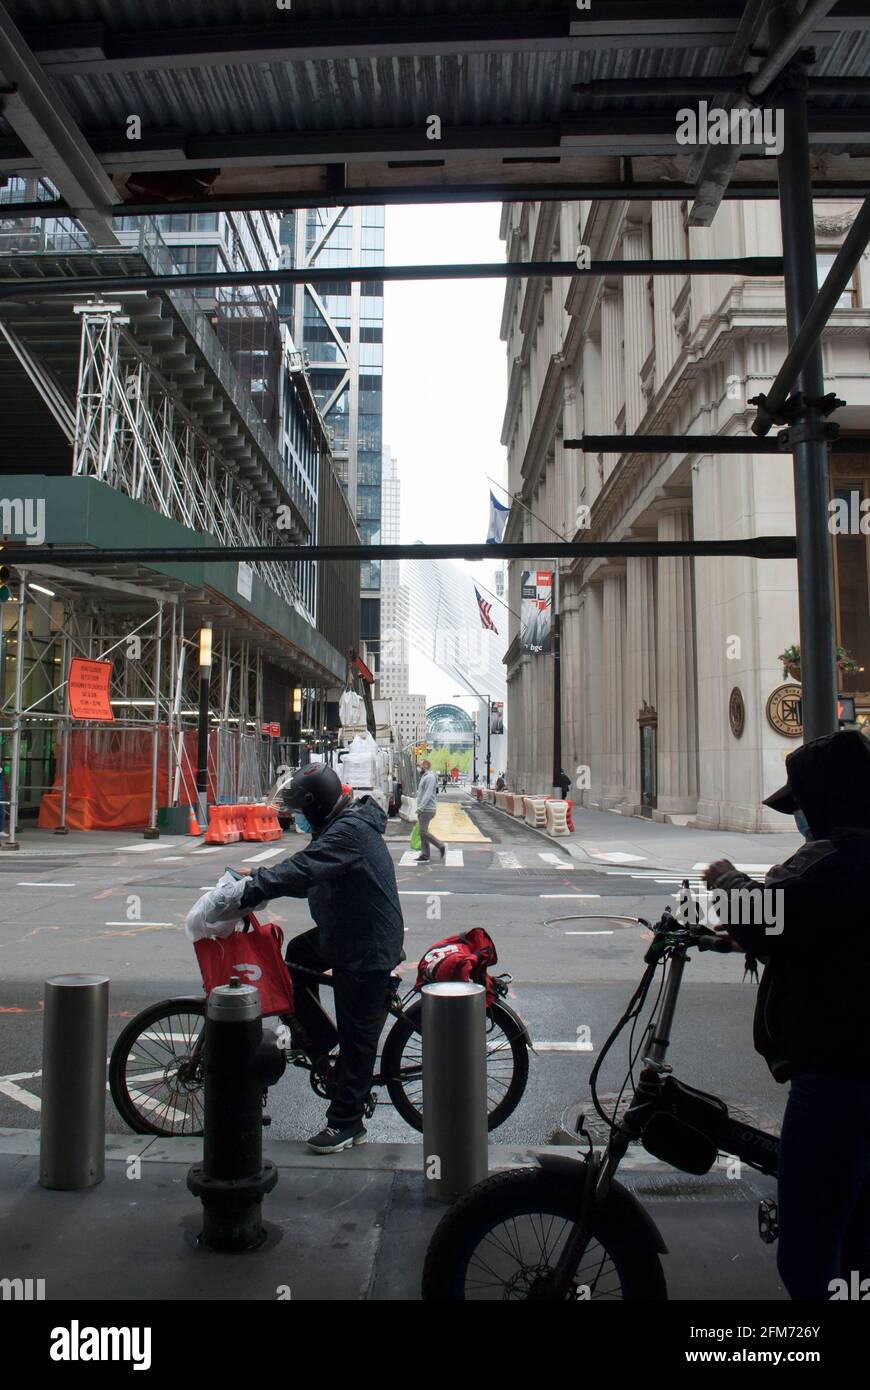 L'uomo sta lavorando per l'azienda di consegna del cibo. Biciclette di New York. L'uomo sta guidando una bici con i sacchetti rossi per la consegna del cibo a Manhattan. Foto Stock